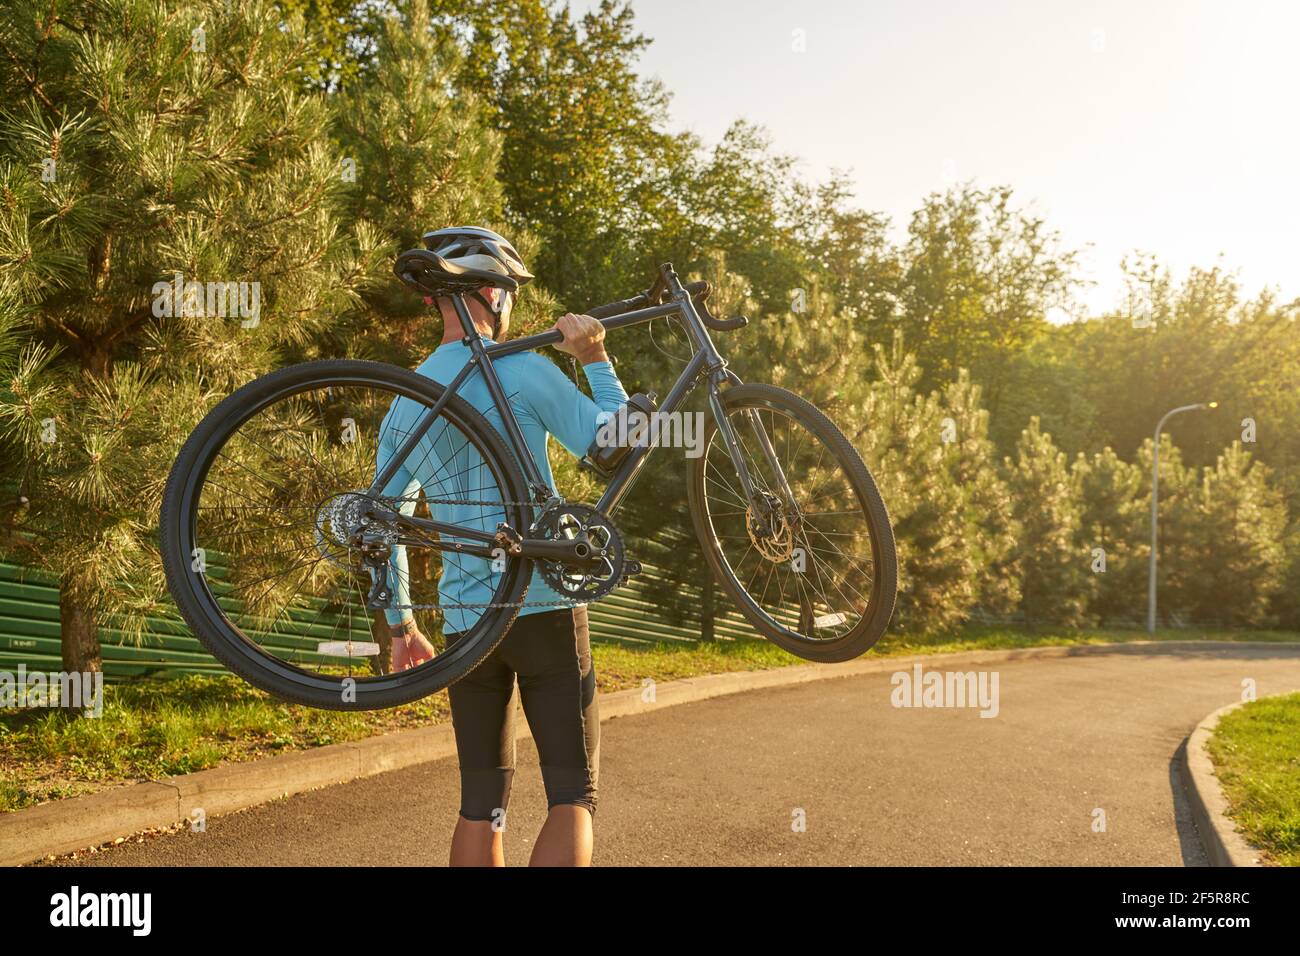 Starker sportlicher Radler in Sportbekleidung und Schutzhelm tragen Sein  Fahrrad nach dem Training im Park bei Sonnenuntergang Stockfotografie -  Alamy